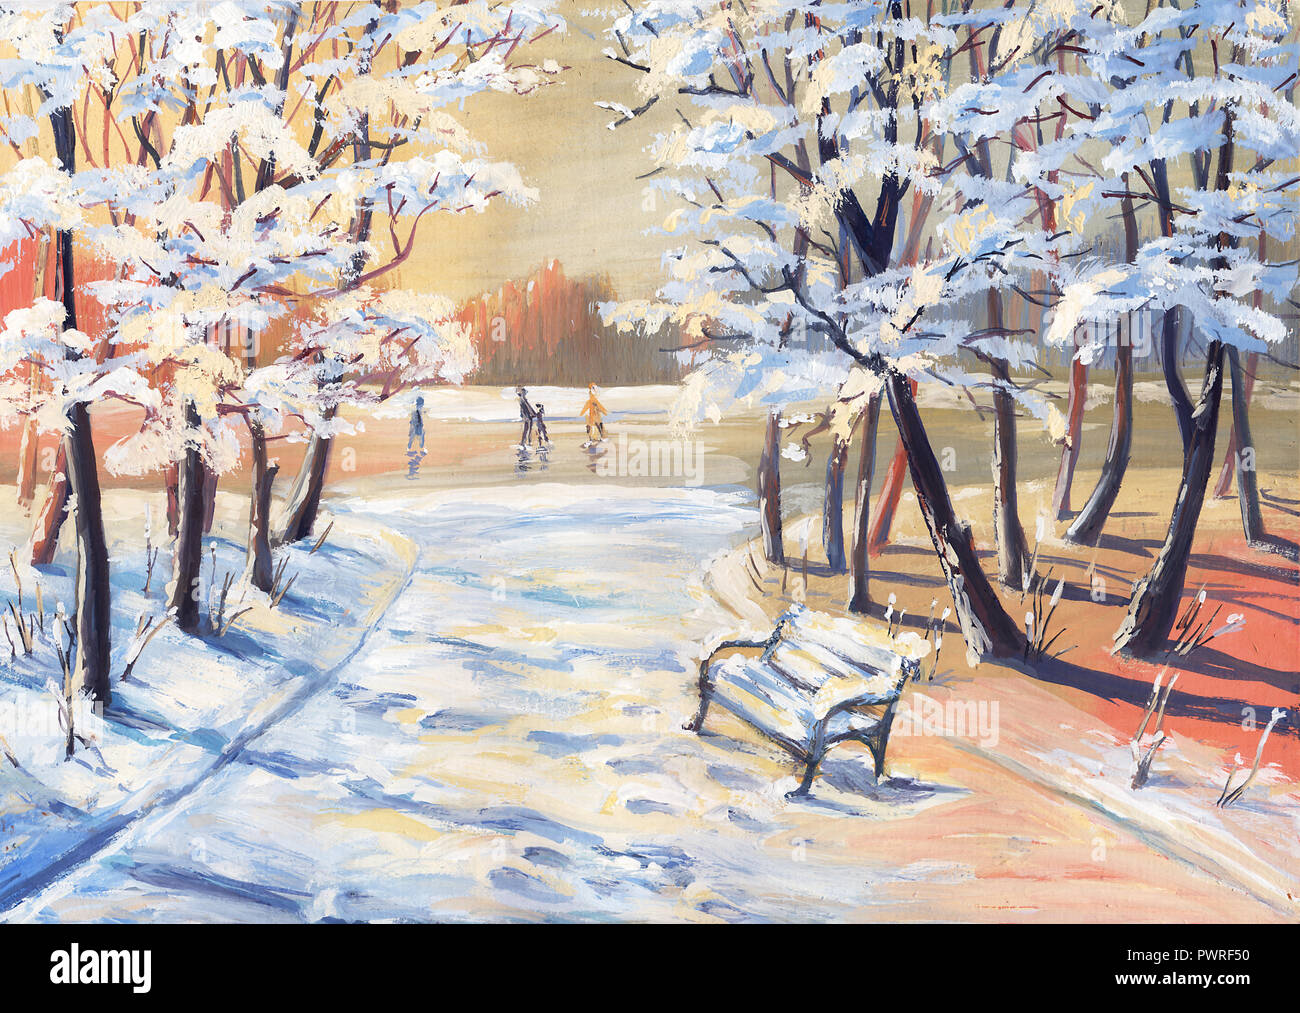 Peinture Gouache paysage d'hiver avec des arbres enneigés, sentier, banc et  patineurs sur une rivière gelée Photo Stock - Alamy